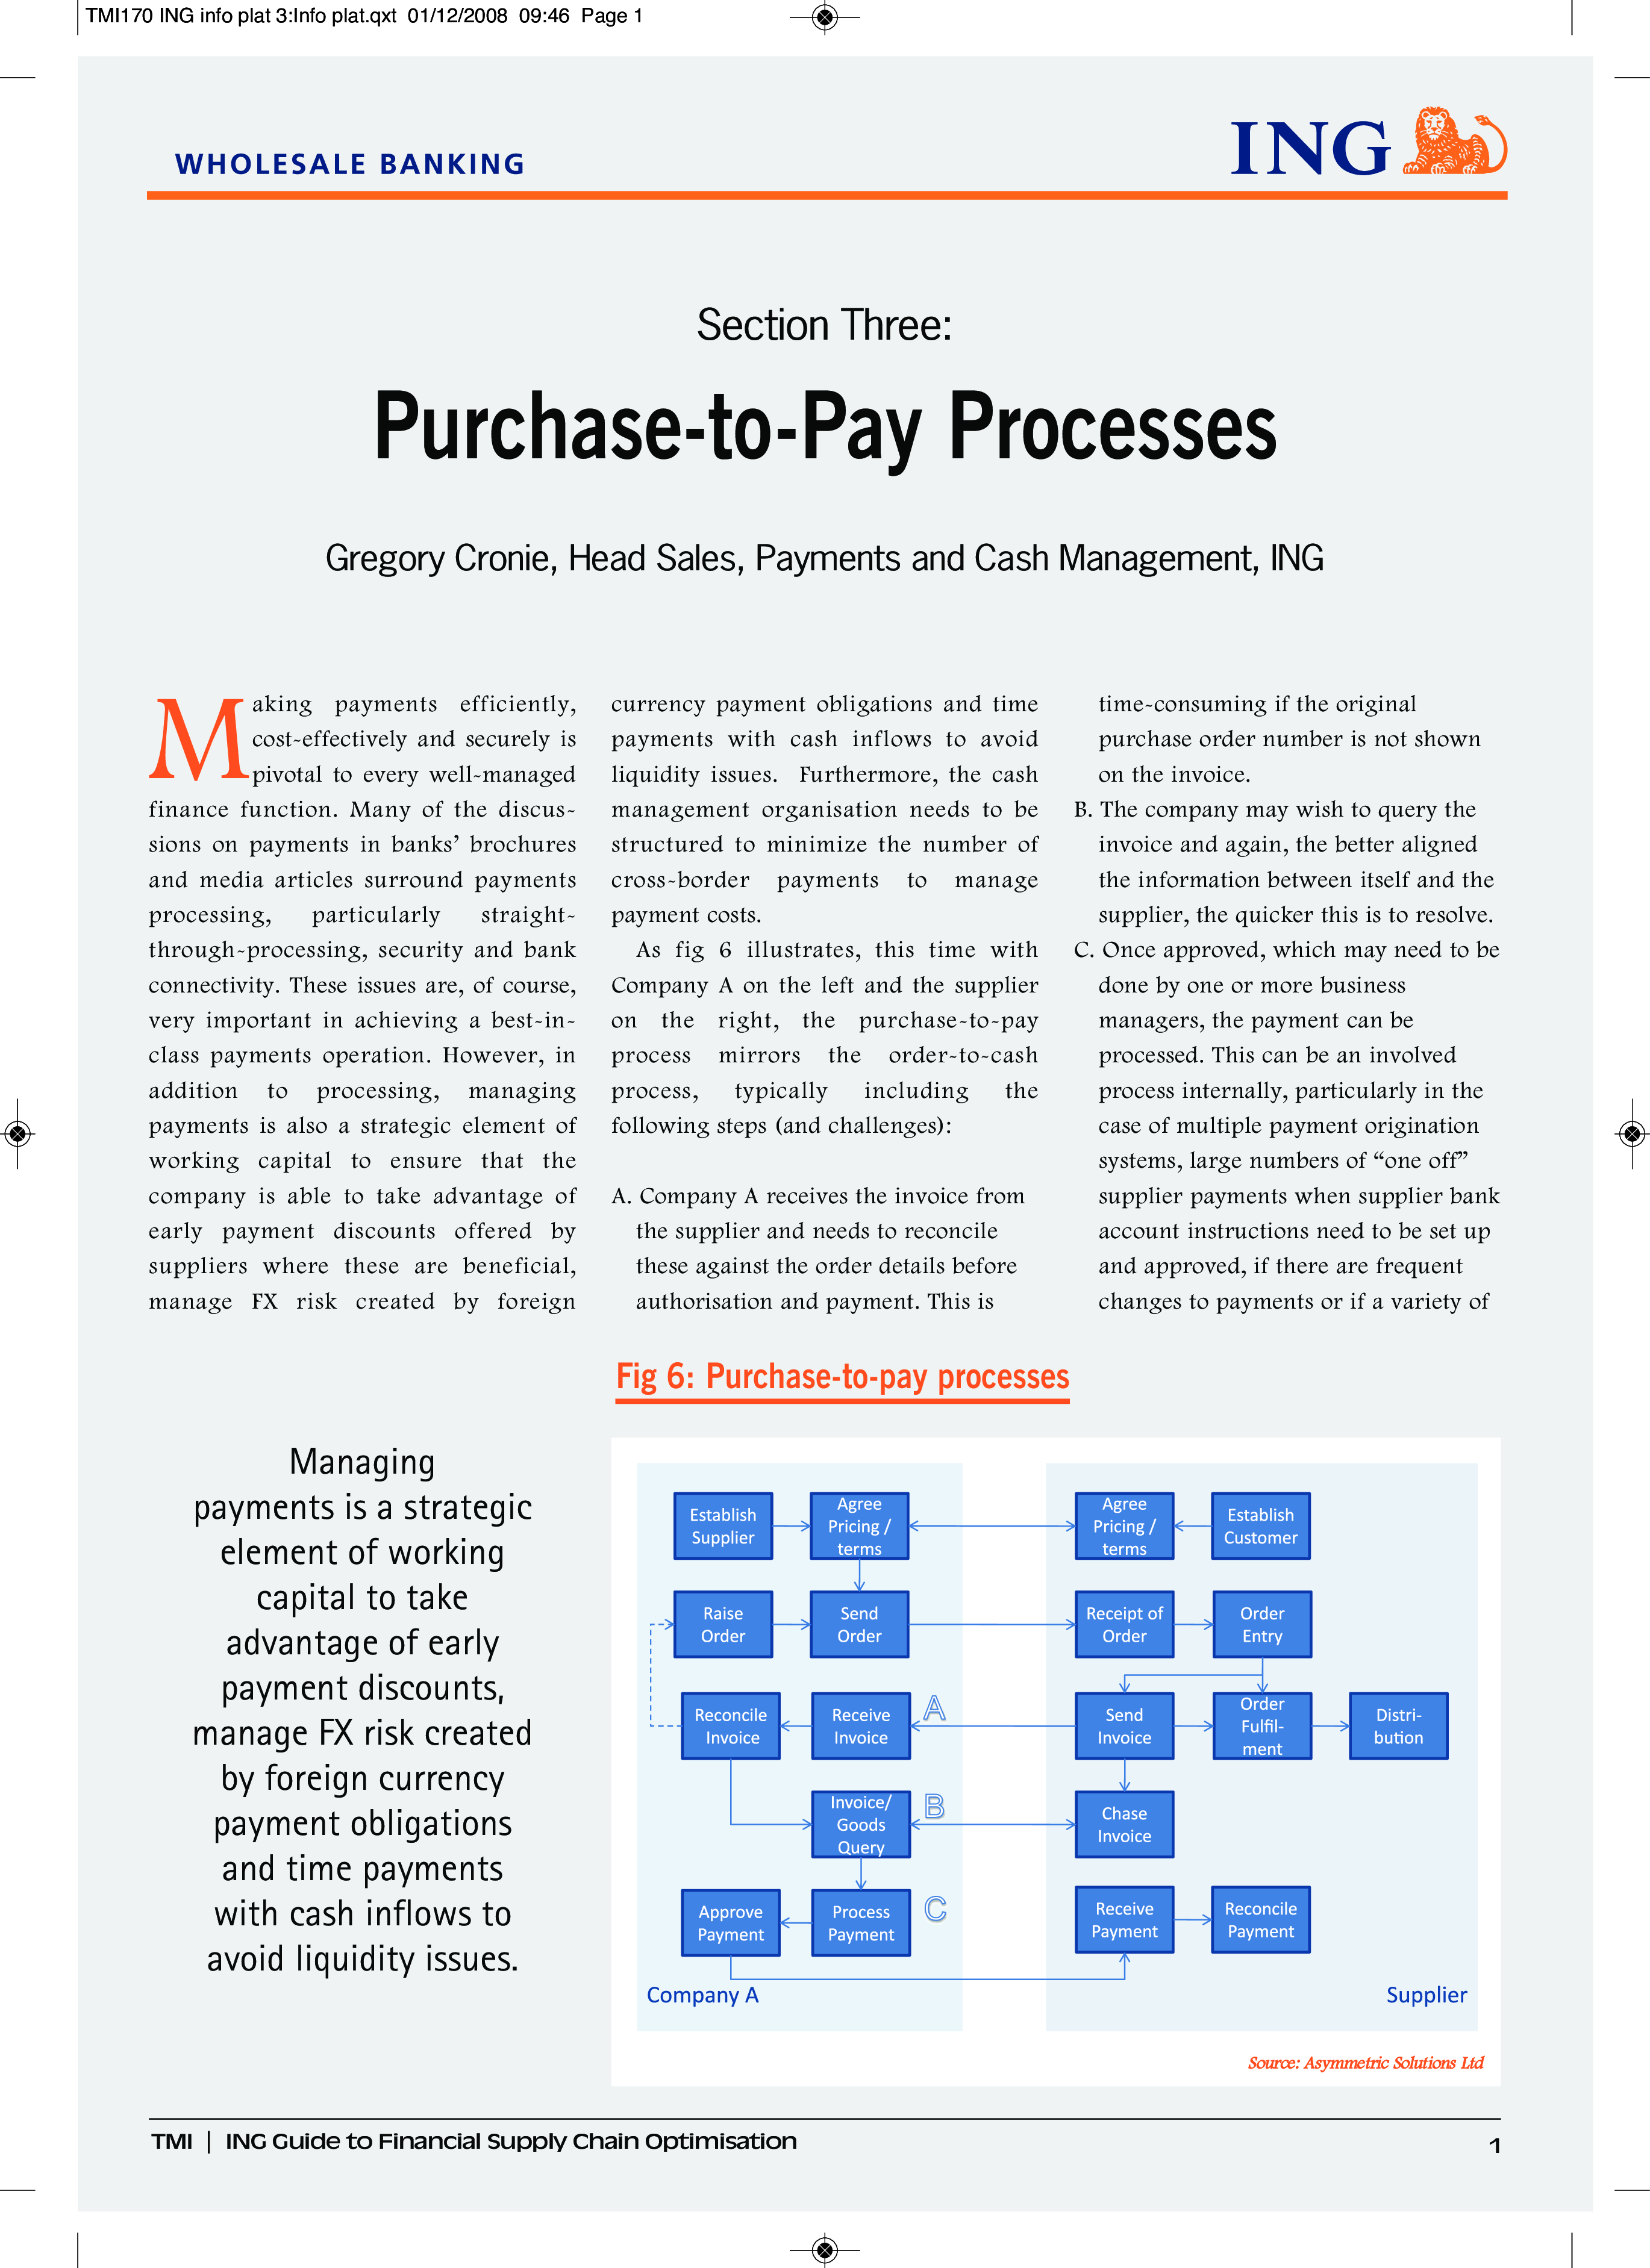 cash payment process flow chart plantilla imagen principal